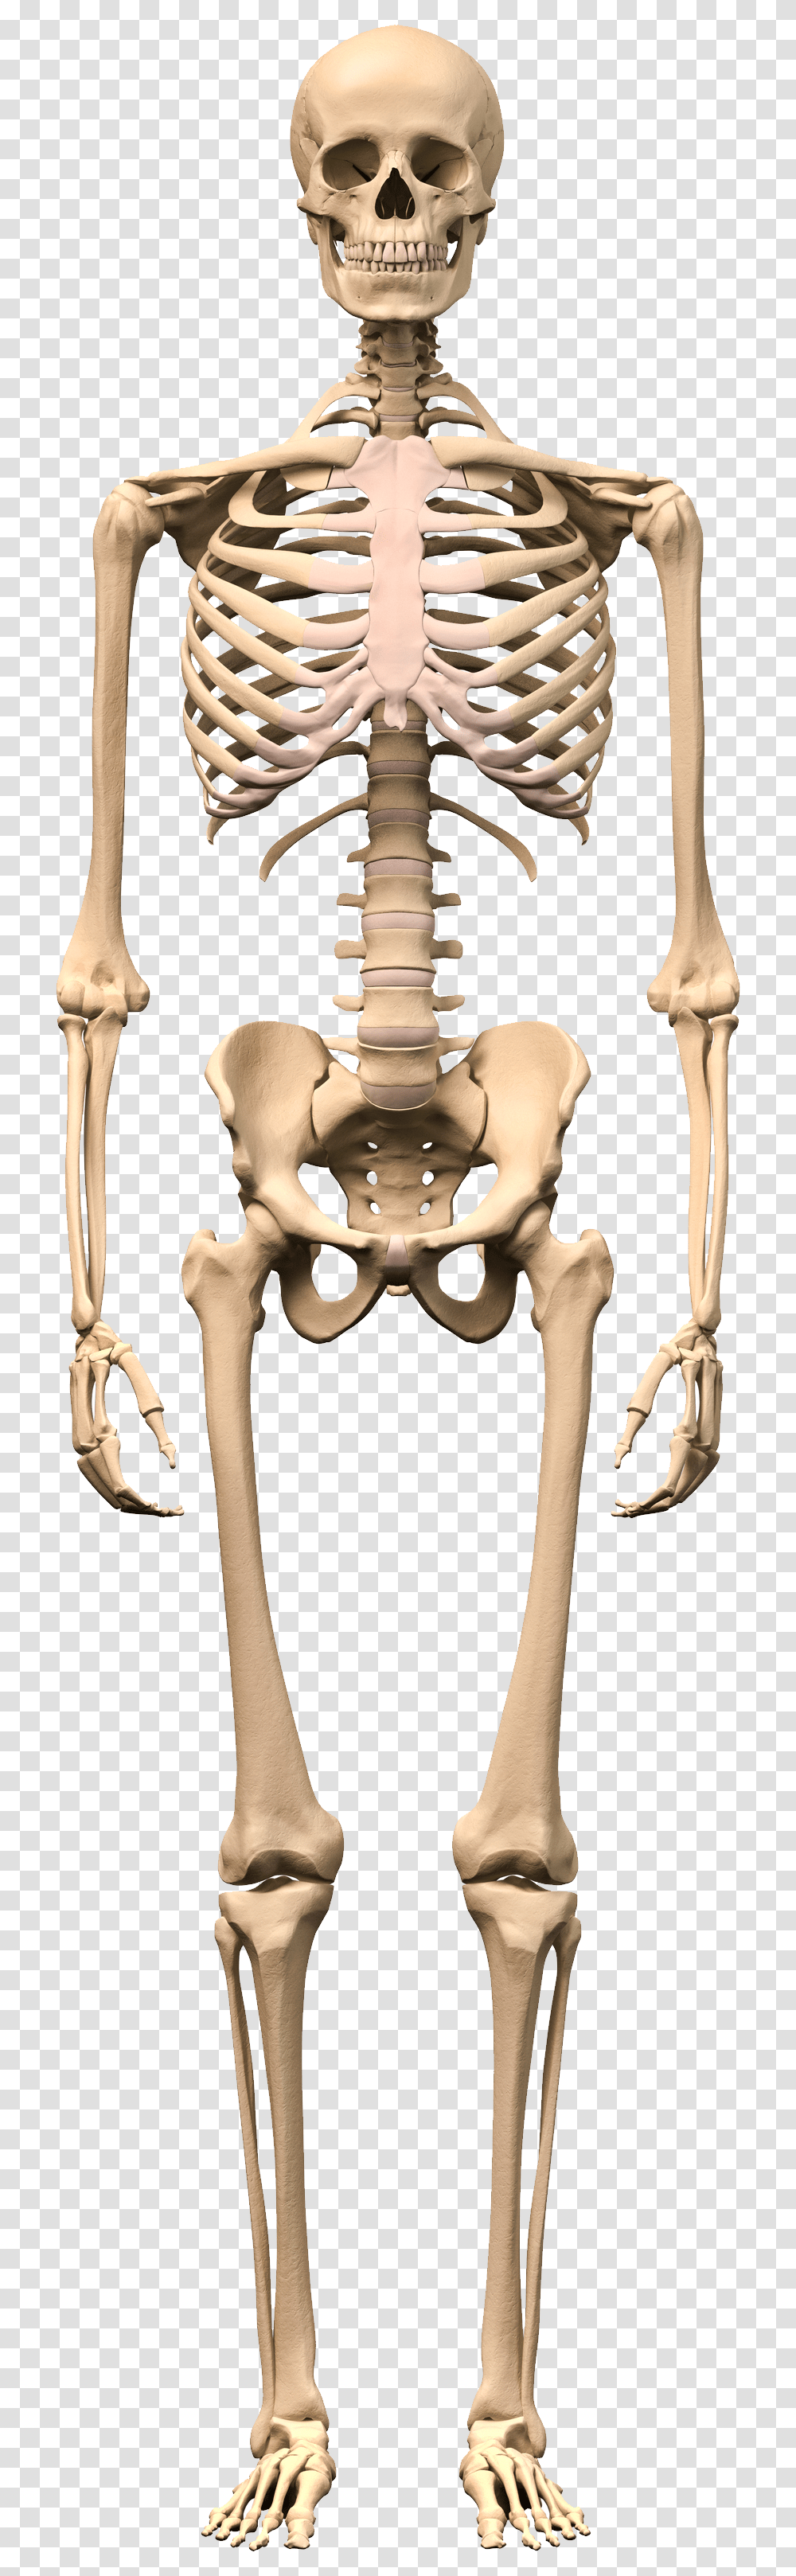 Skeleton Human Skeleton Images Hd, Hip Transparent Png